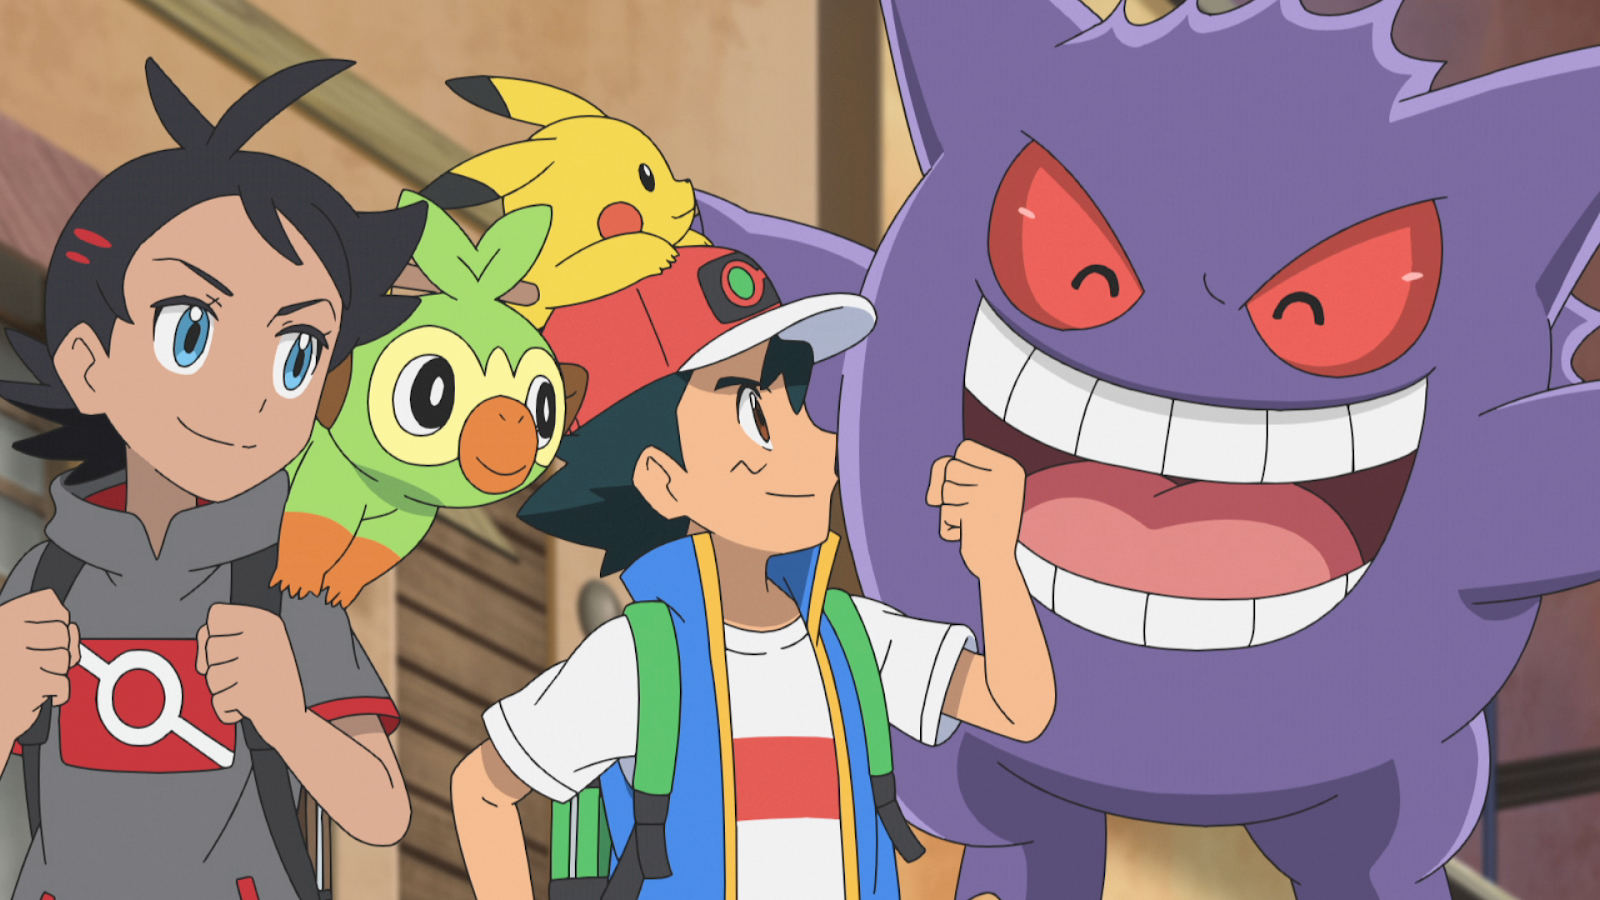 Jornadas Pokémon, Vigésima terceira temporada chegará em breve -  @felizcompouco